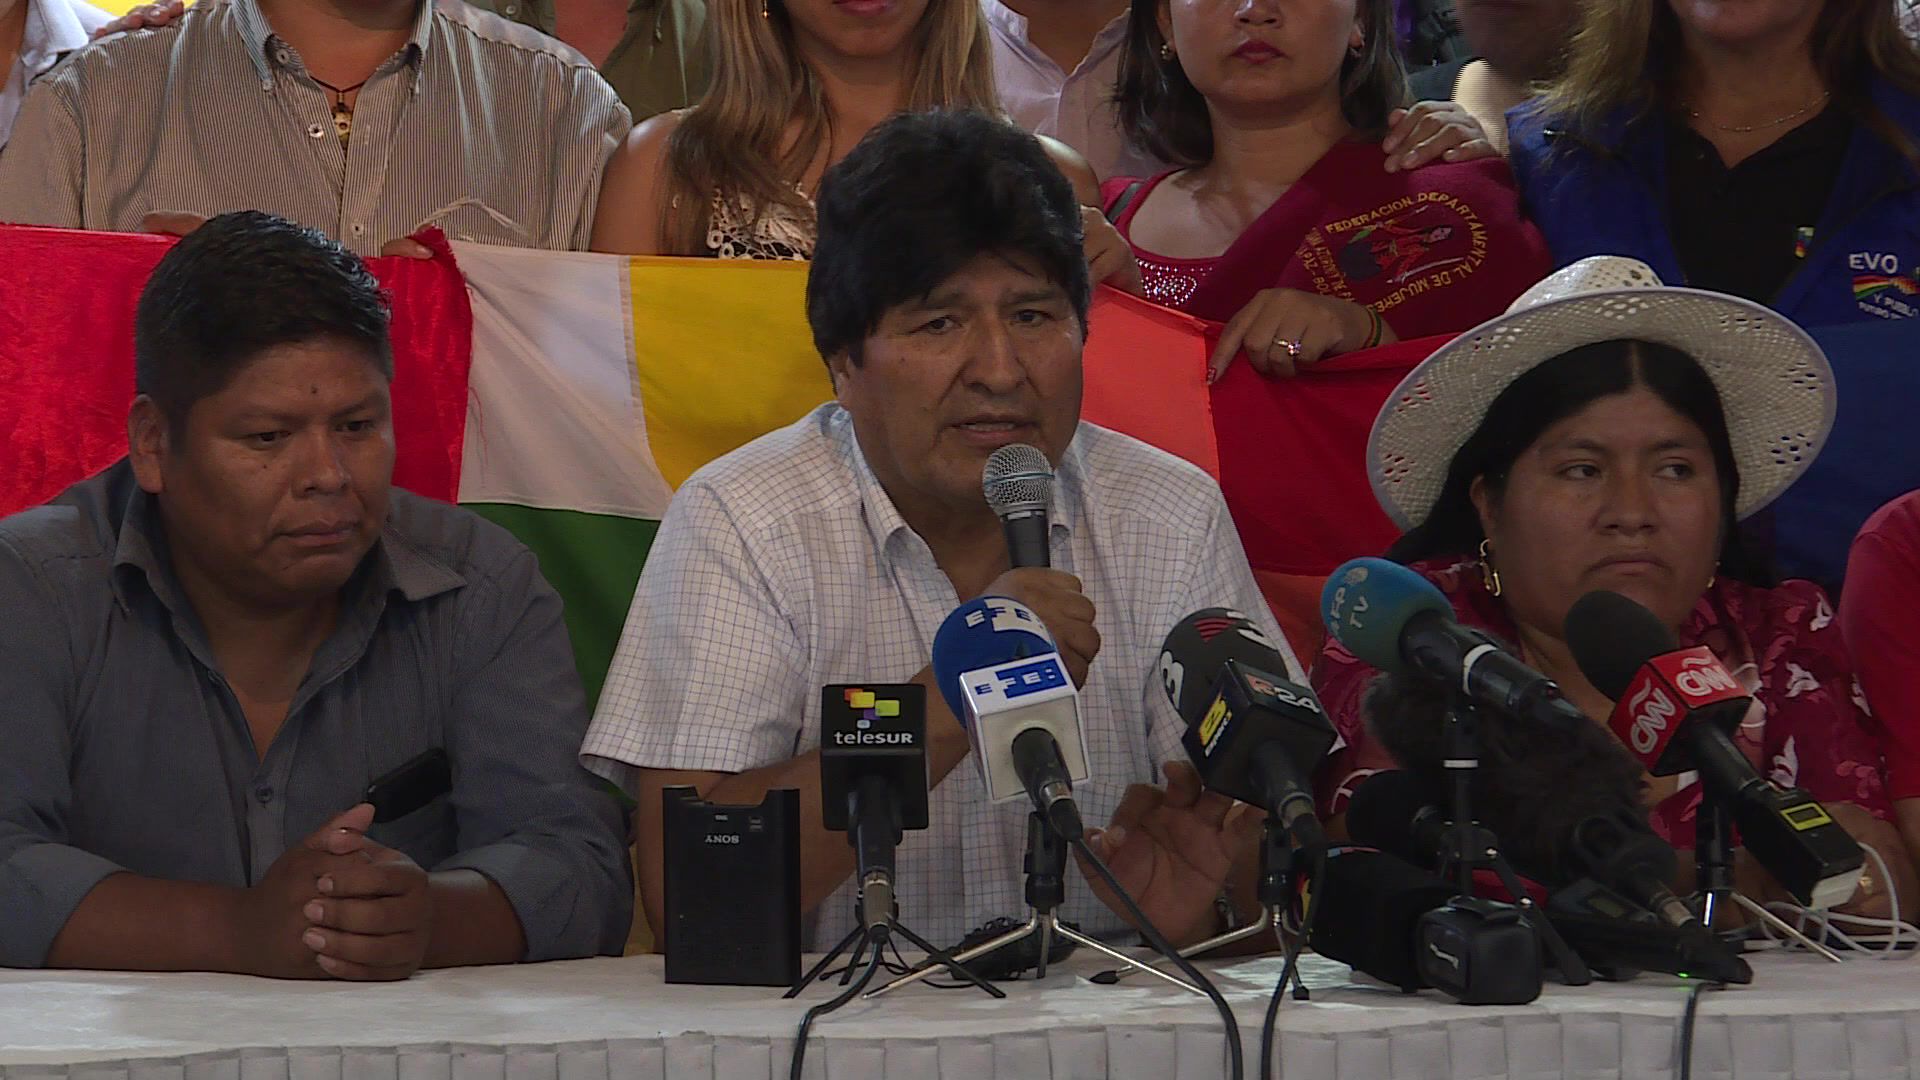 El exministro boliviano de Economía Luis Arce será candidato a las elecciones presidenciales del próximo 3 de mayo en Bolivia, en una fórmula con el excanciller David Choquehuanca, informó el domingo el expresidente Evo Morales.